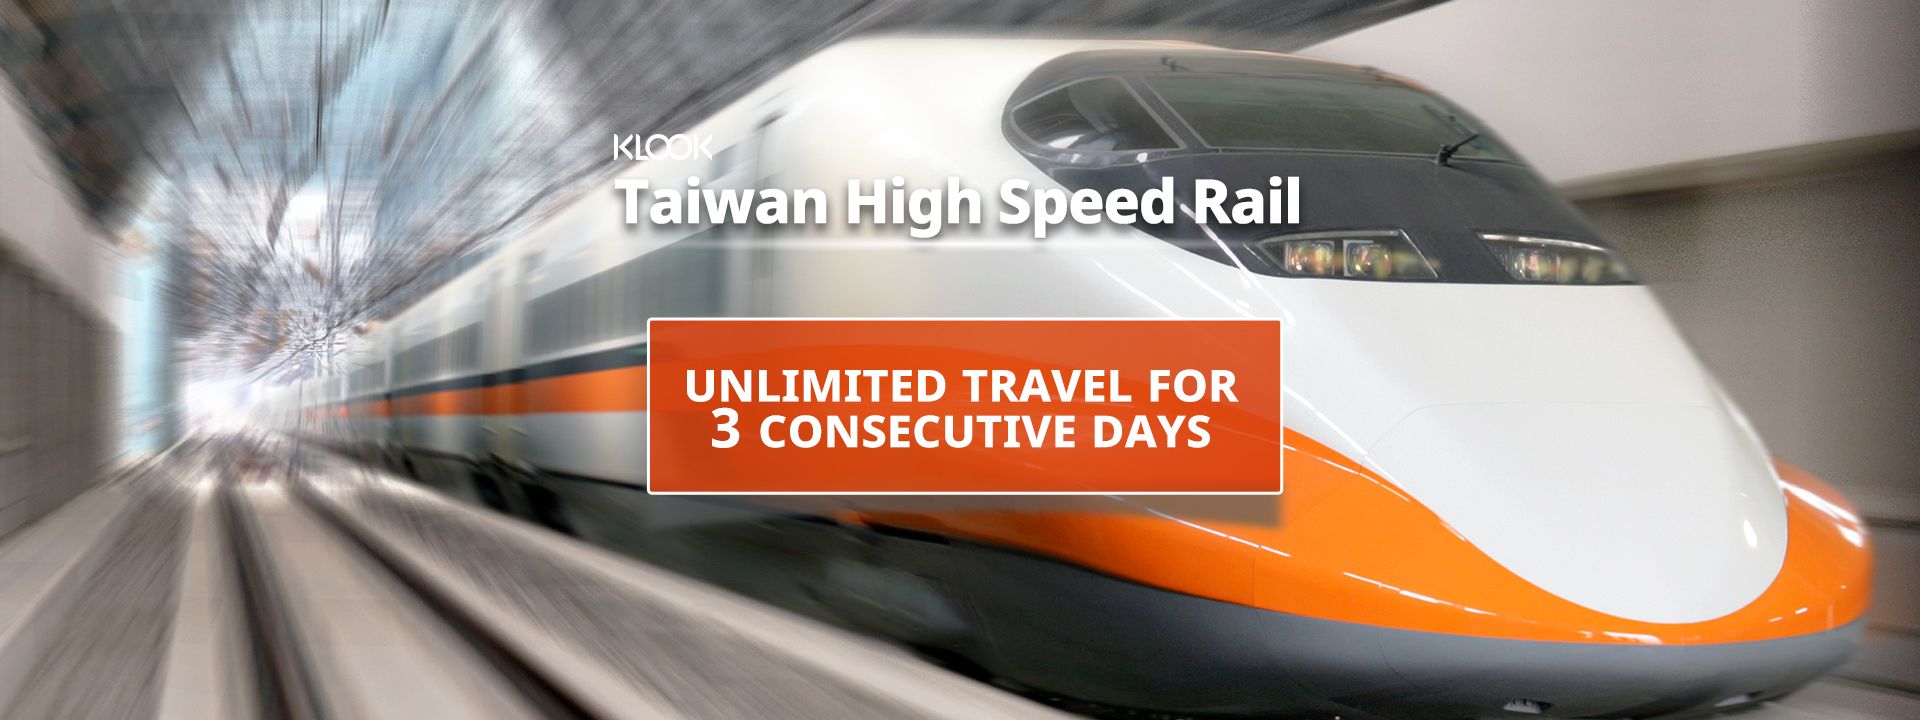 Imagen del tour: Abono Unlimited Tourist Pass para el tren de alta velocidad de Taiwán (THSR por sus siglas en inglés)